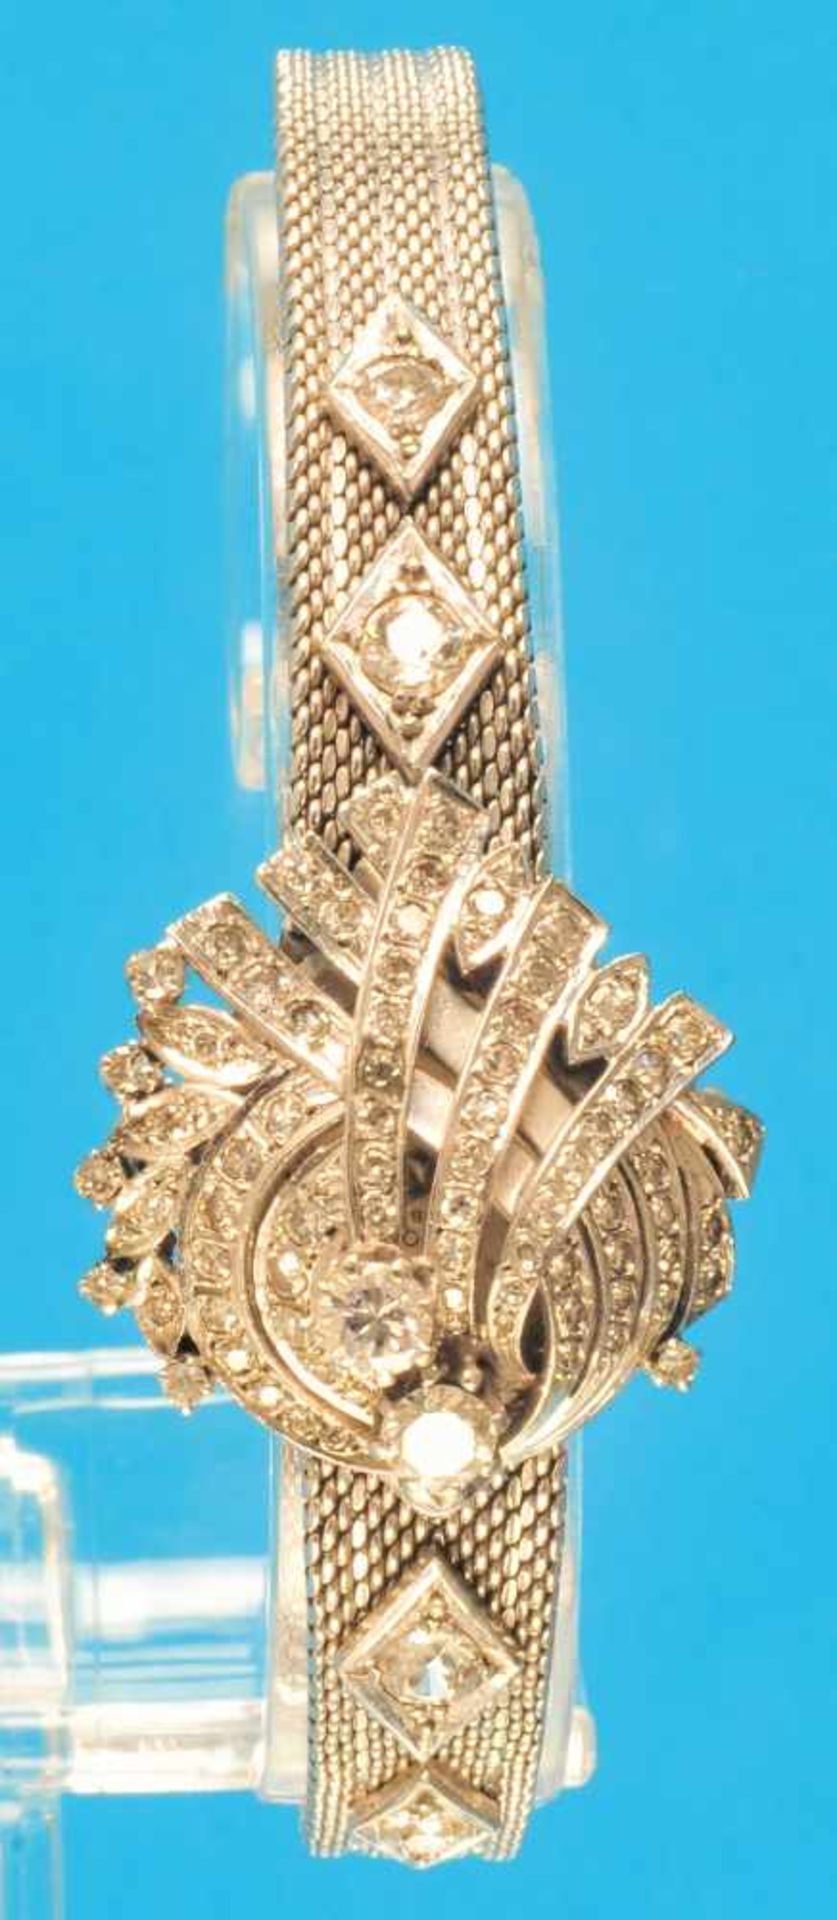 Ladies whitegolden wristwatch with diamonds, AcronDamen Weißgold- Armbanduhr mit Diamantbesatz und